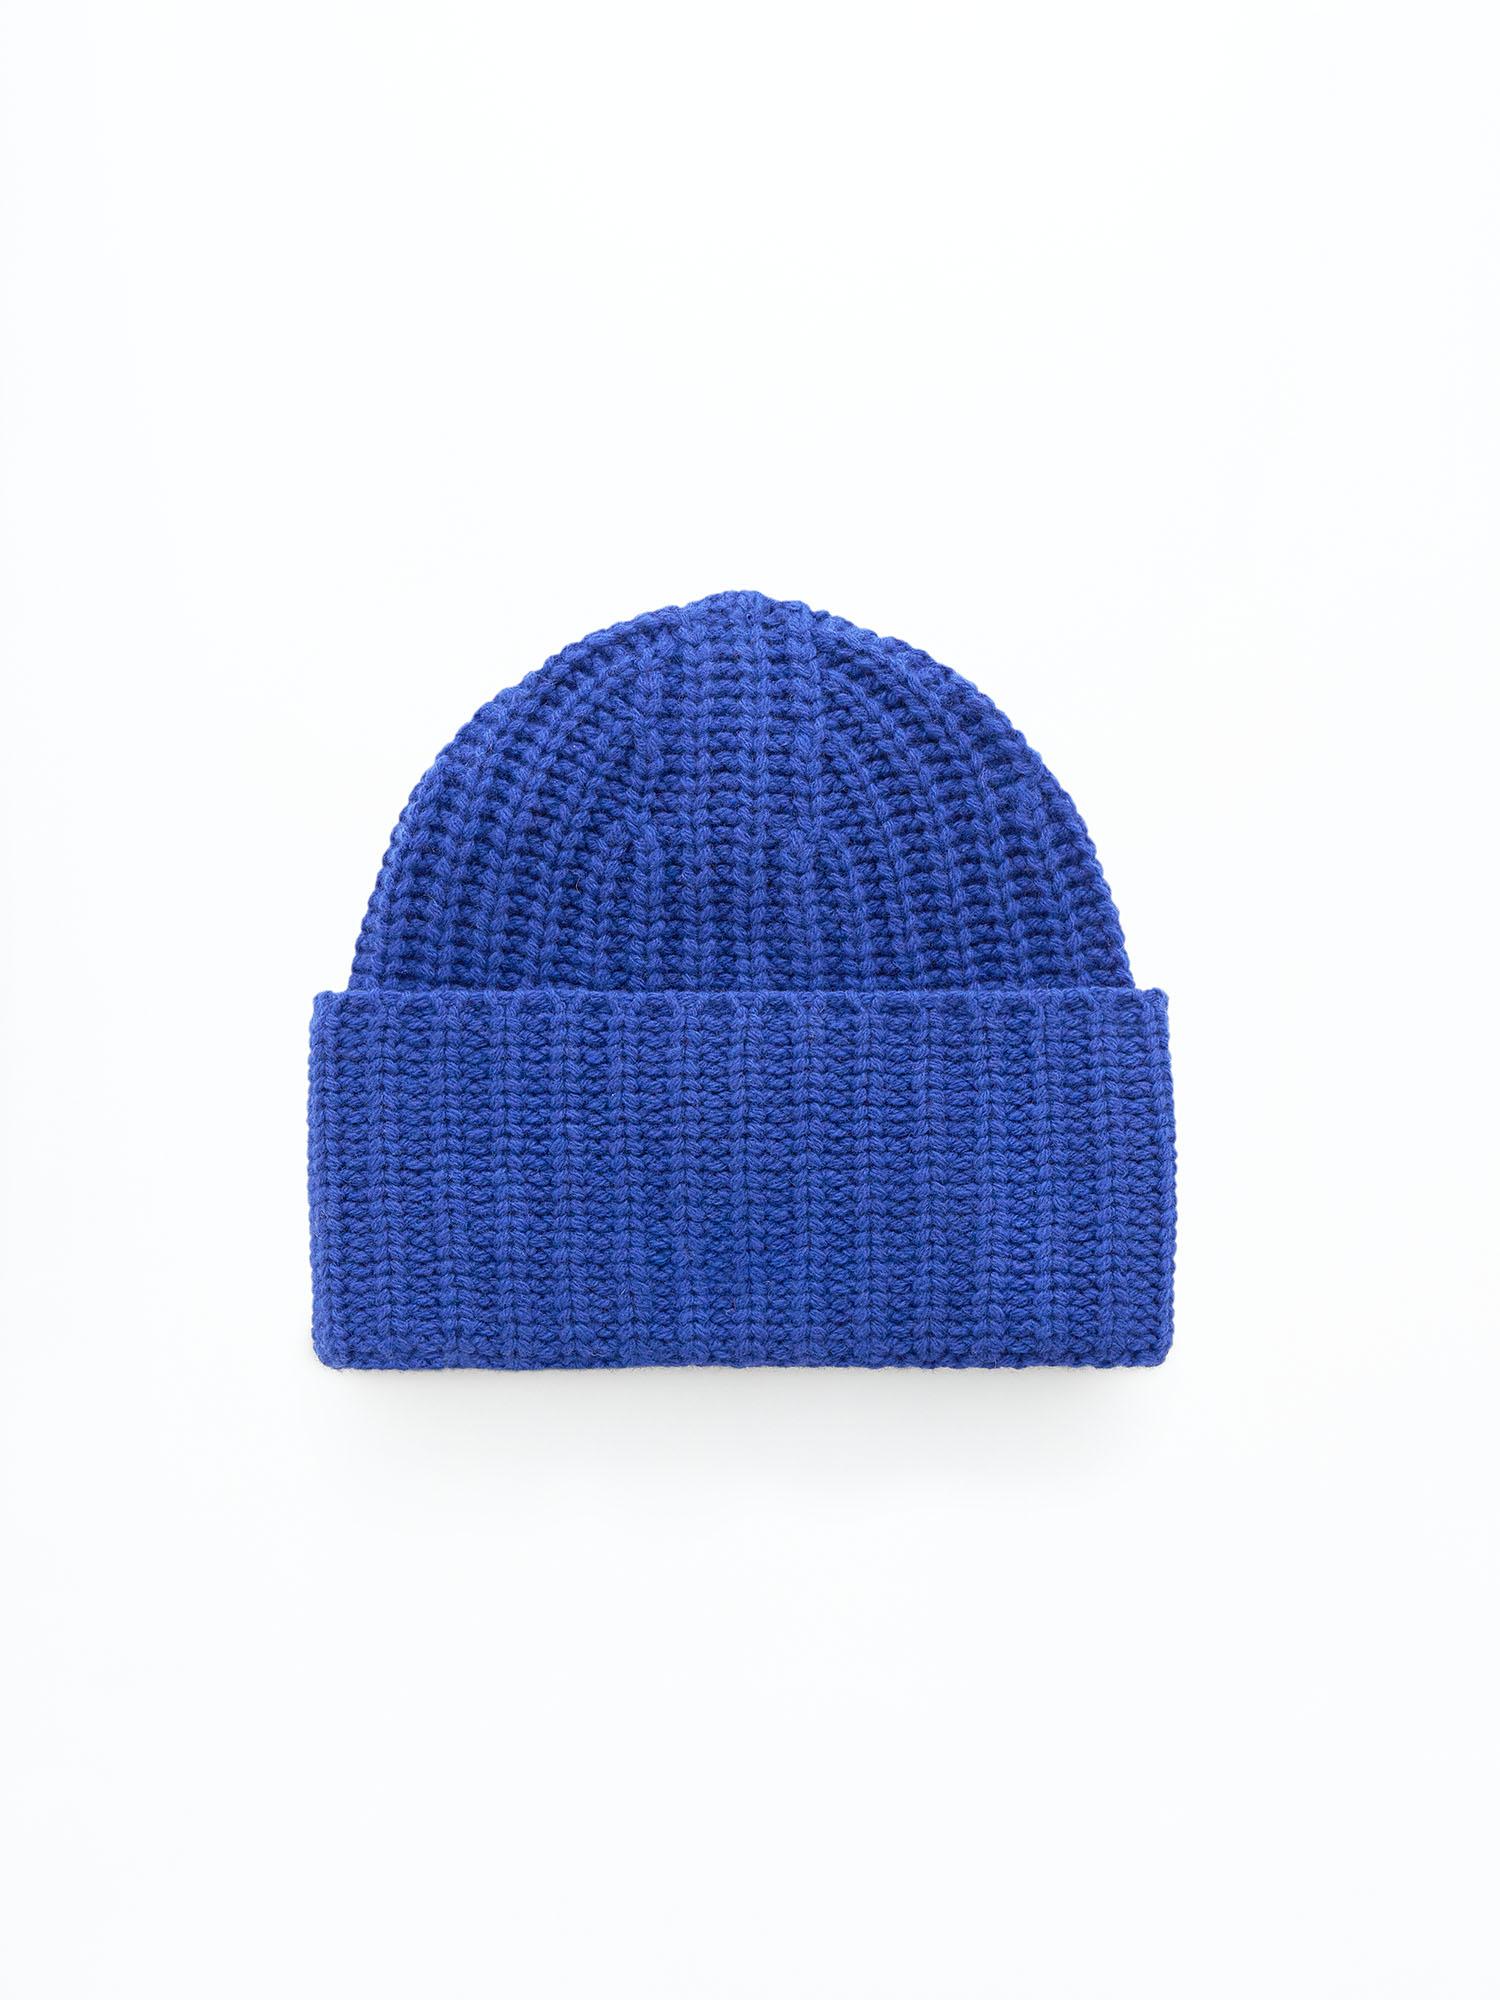 Filippa K Corinne Hat in Blue | Lyst